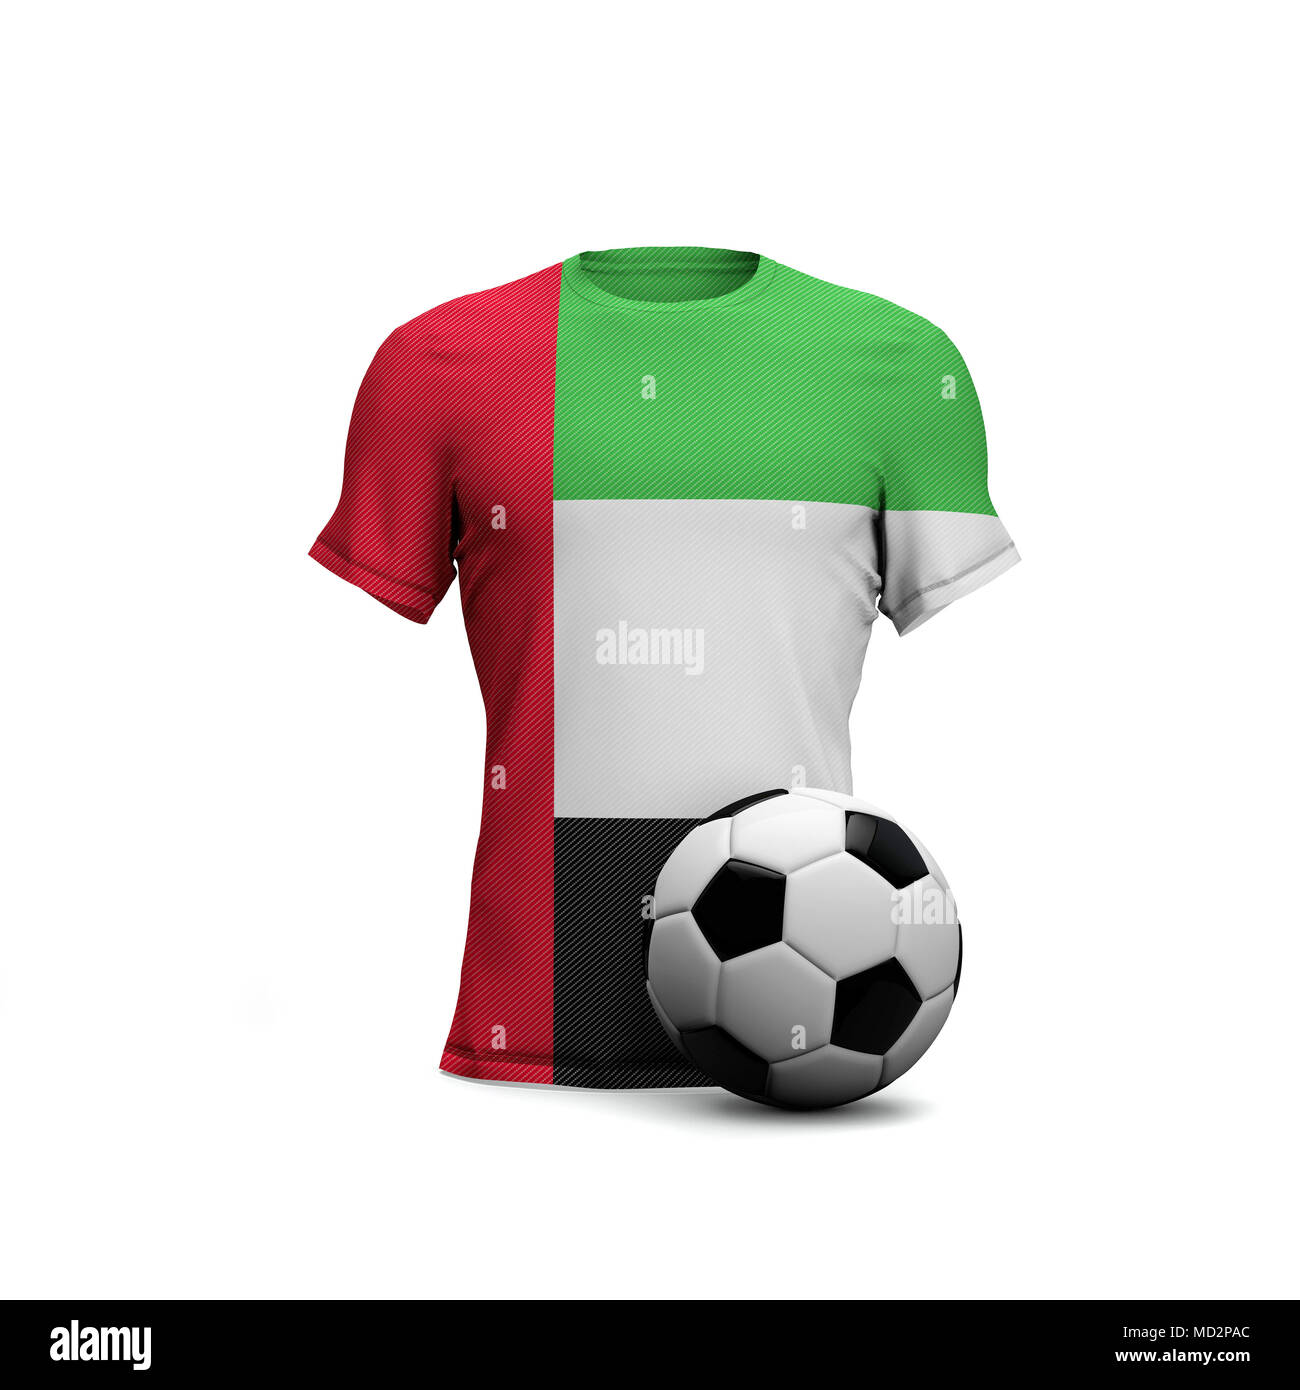 Camiseta de fútbol de los Emiratos Árabes Unidos con bandera nacional y pelota de fútbol. 3D Rendering Foto de stock